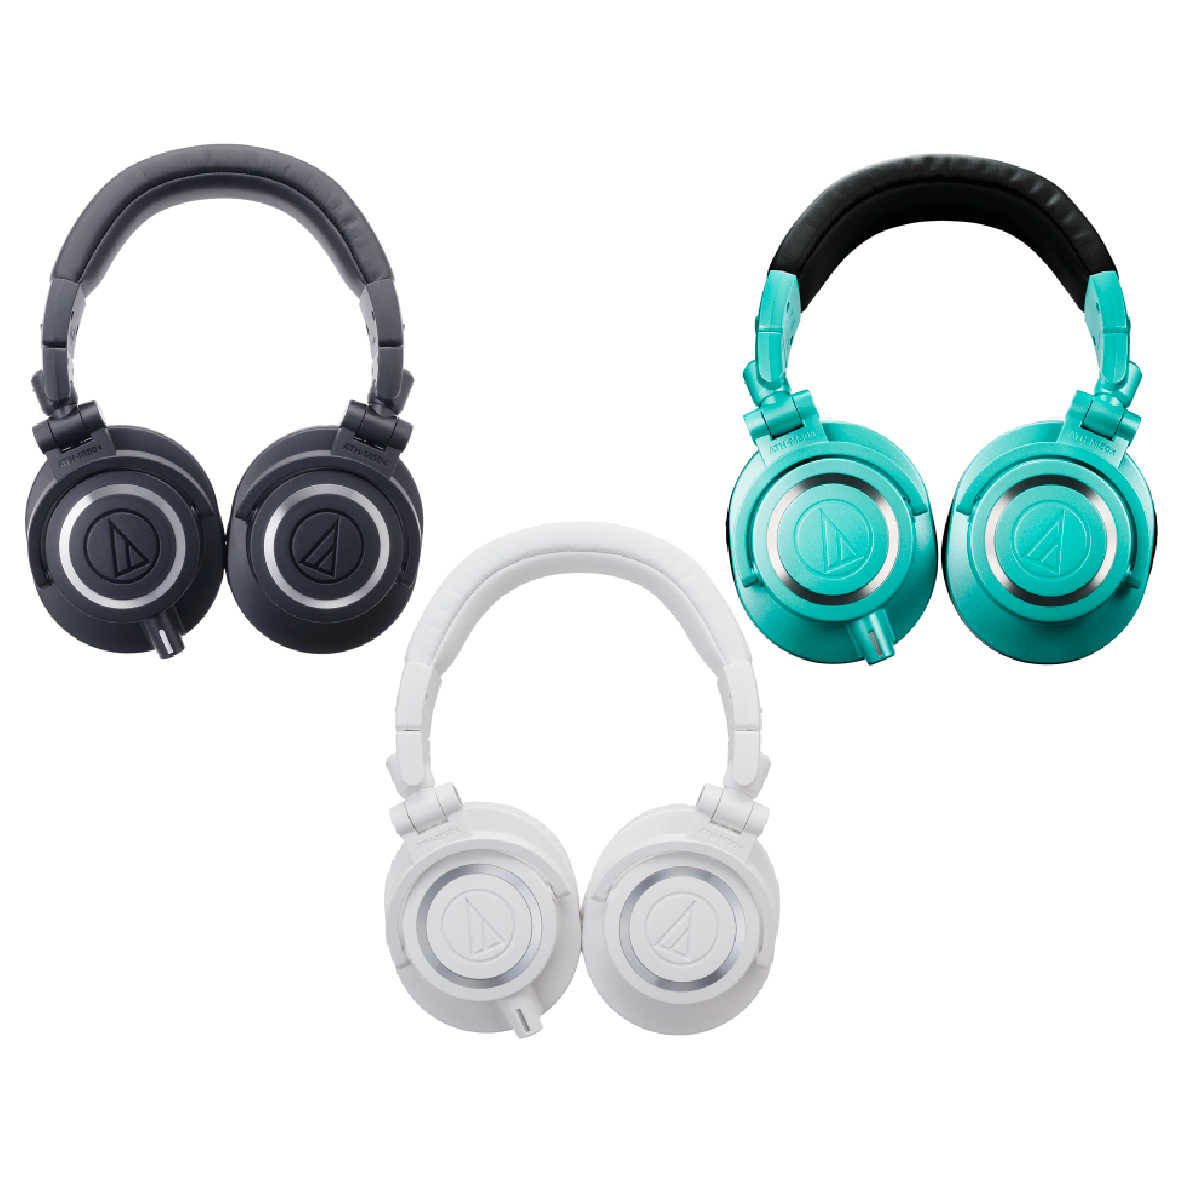 鐵三角 ATH-M50X 專業用 監聽 耳罩式 耳機 多色可選  | My Ear 耳機專門店